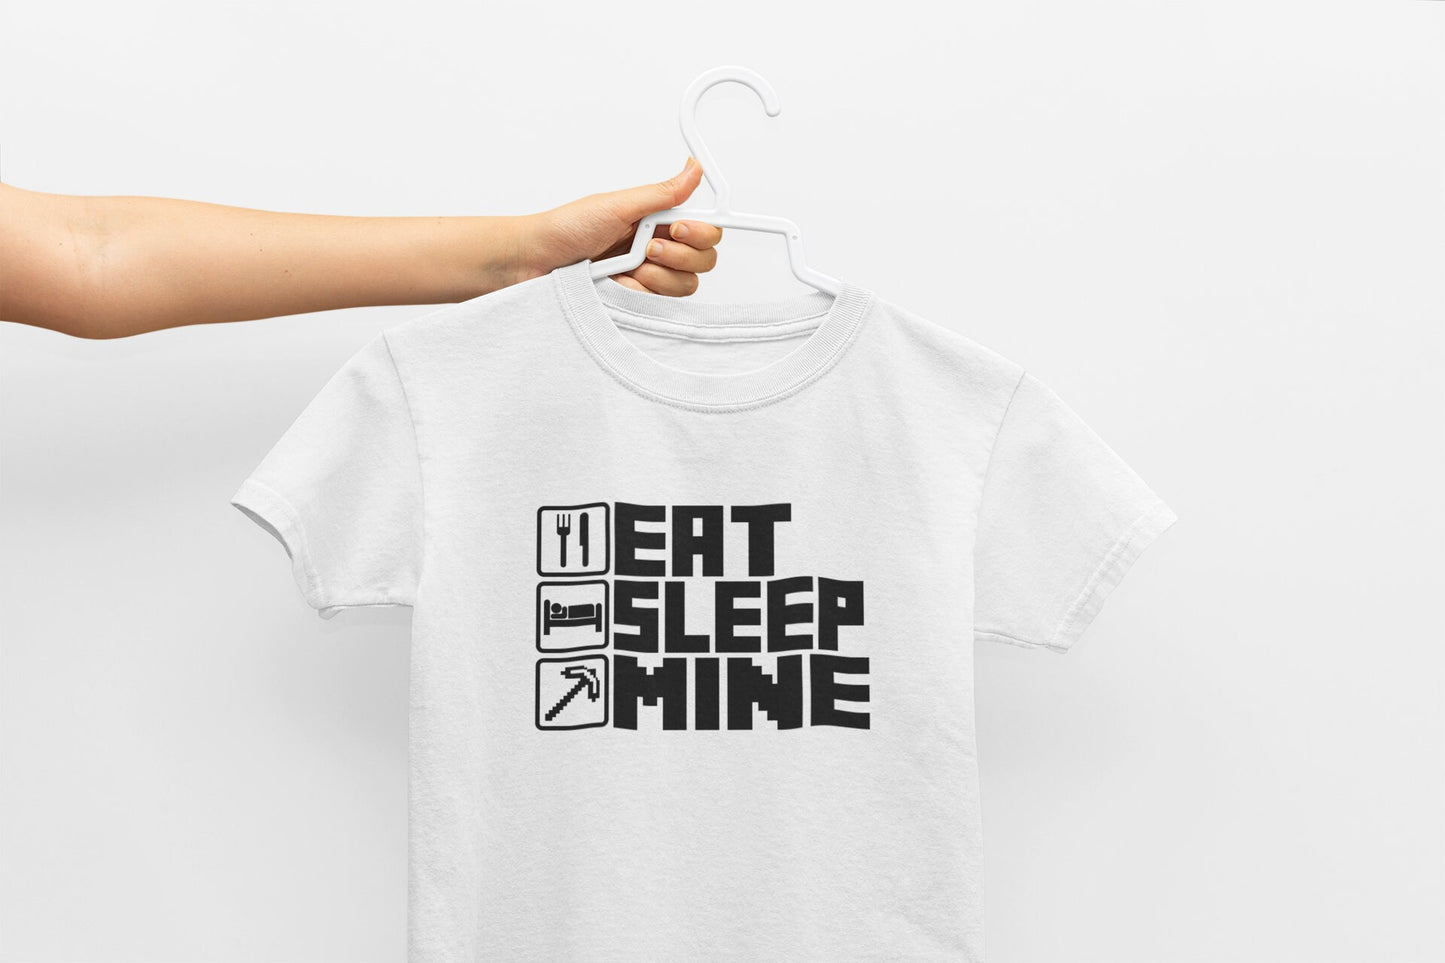 Eat Sleep Mine Repeat Kids T-Shirt, Kids Gaming Shirt